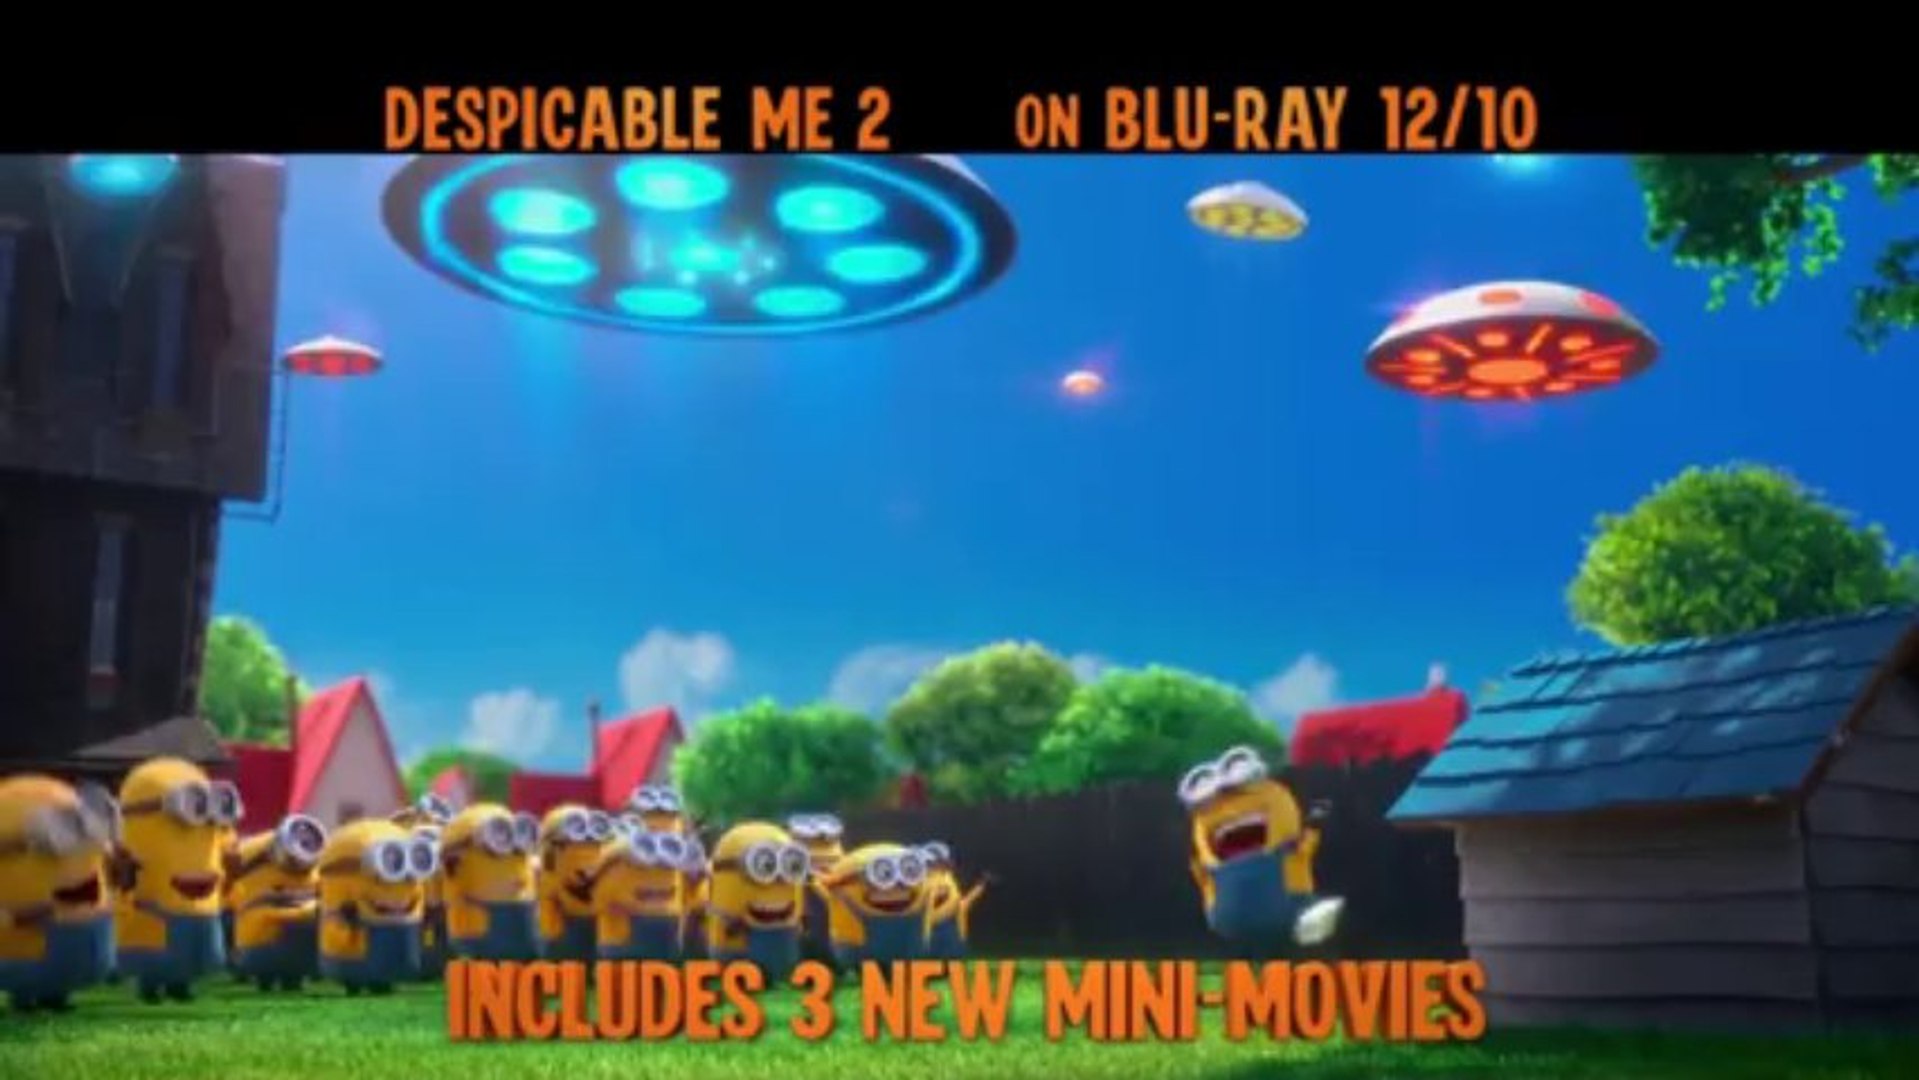 Despicable Me 2 Trailer